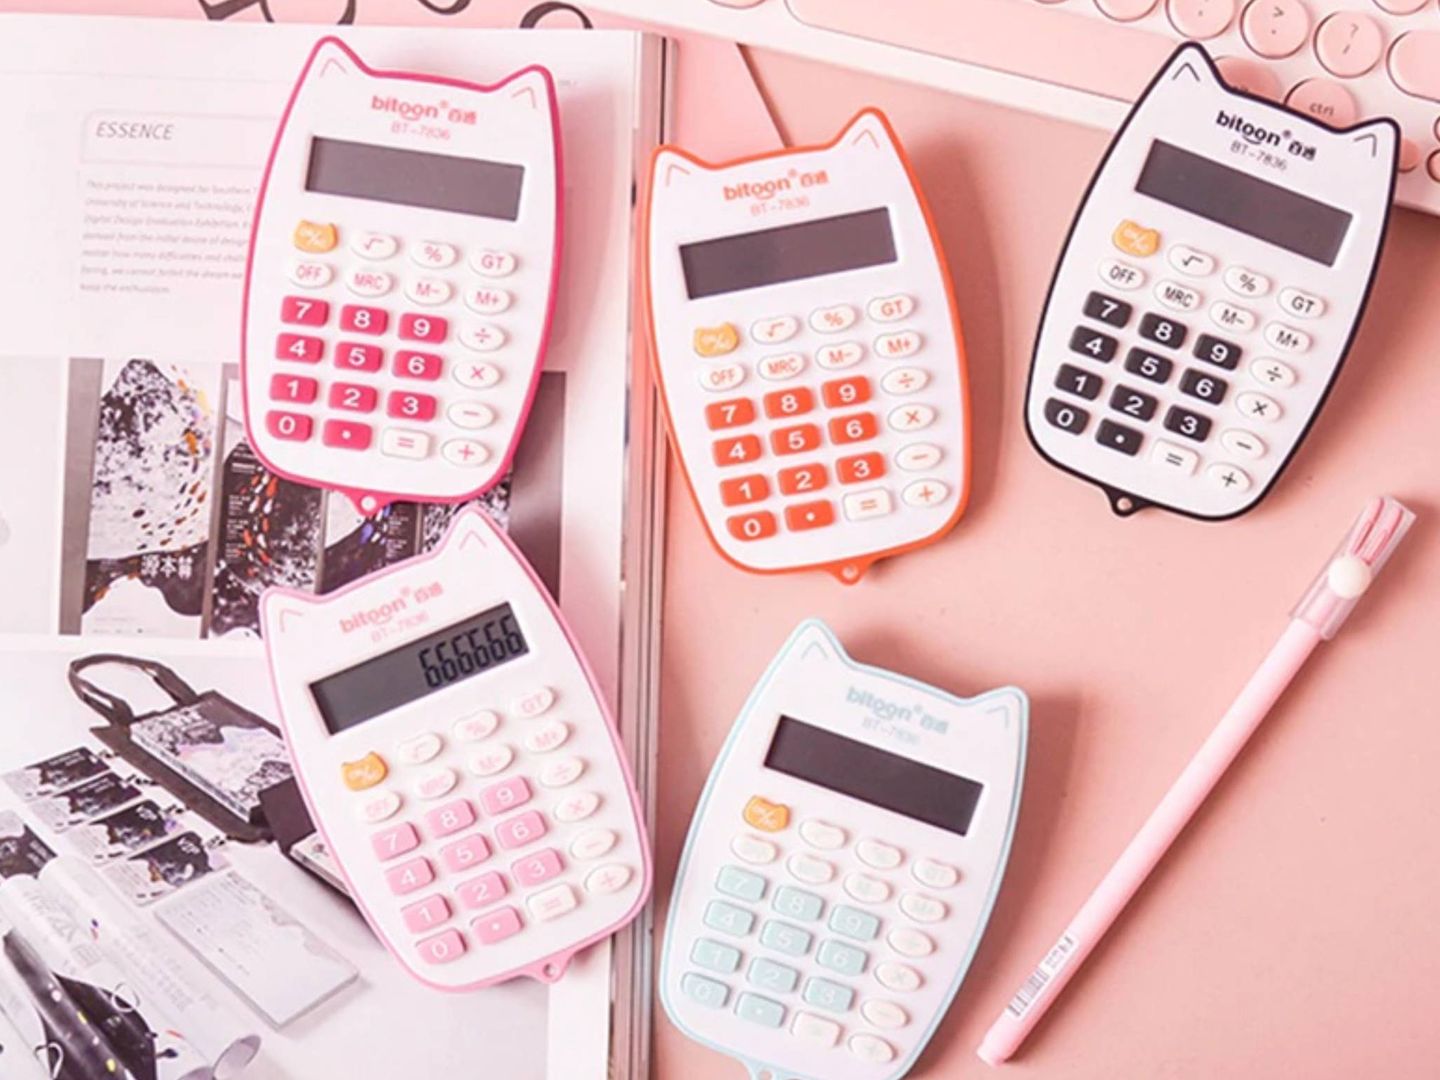 Echar cuentas con una calculadora con forma de gatitos, 2 euros, será más llevadero. (Cortesía Aliexpress)